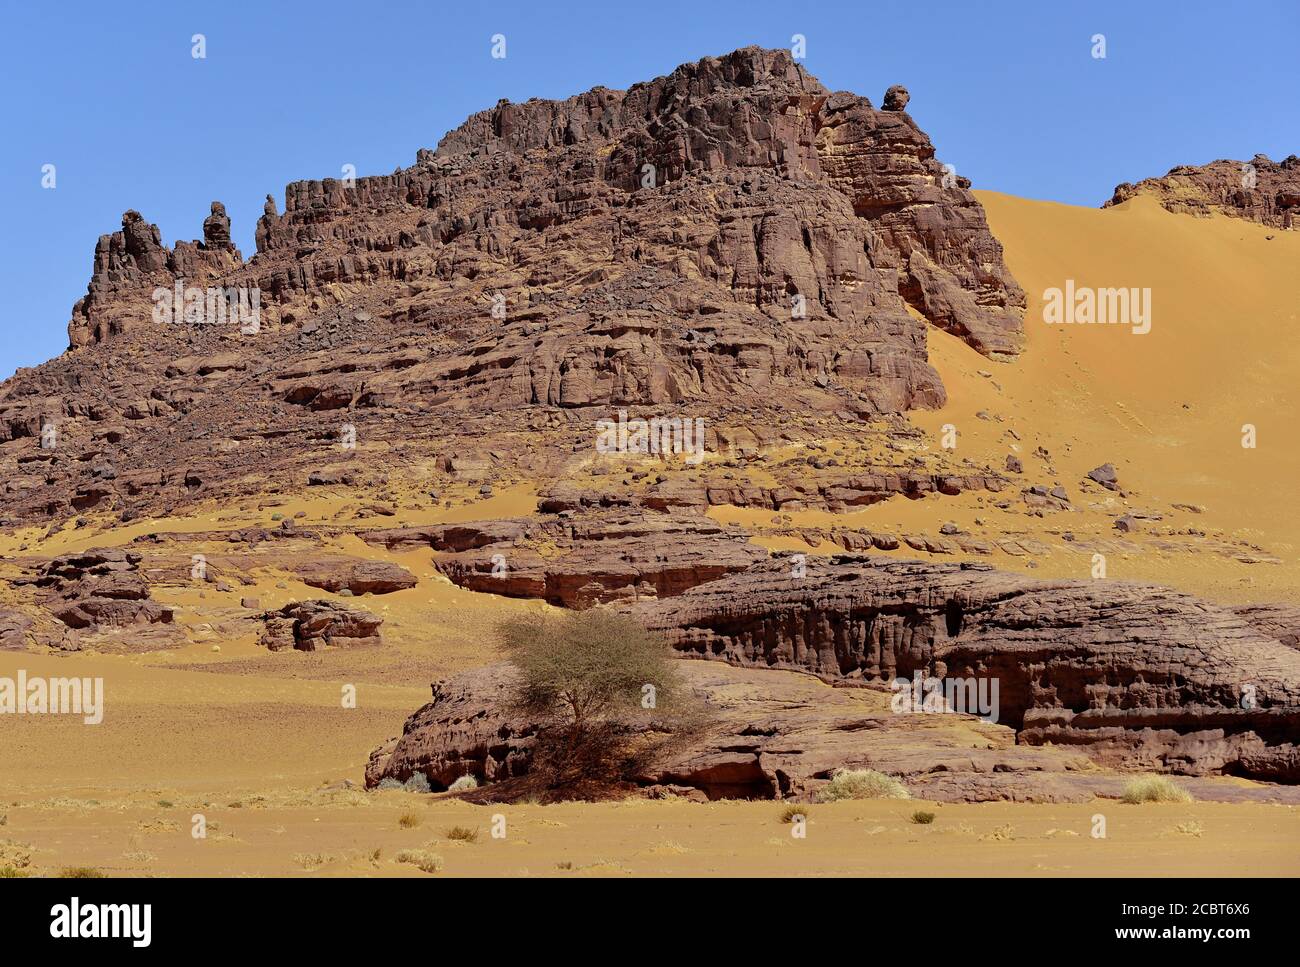 ROCCE E DUNE DI SABBIA NELLA REGIONE DI TADRART NEL DESERTO DEL SAHARA IN ALGERIA. SAFARI E AVVENTURA. TURISMO IN ALGERIA. Foto Stock